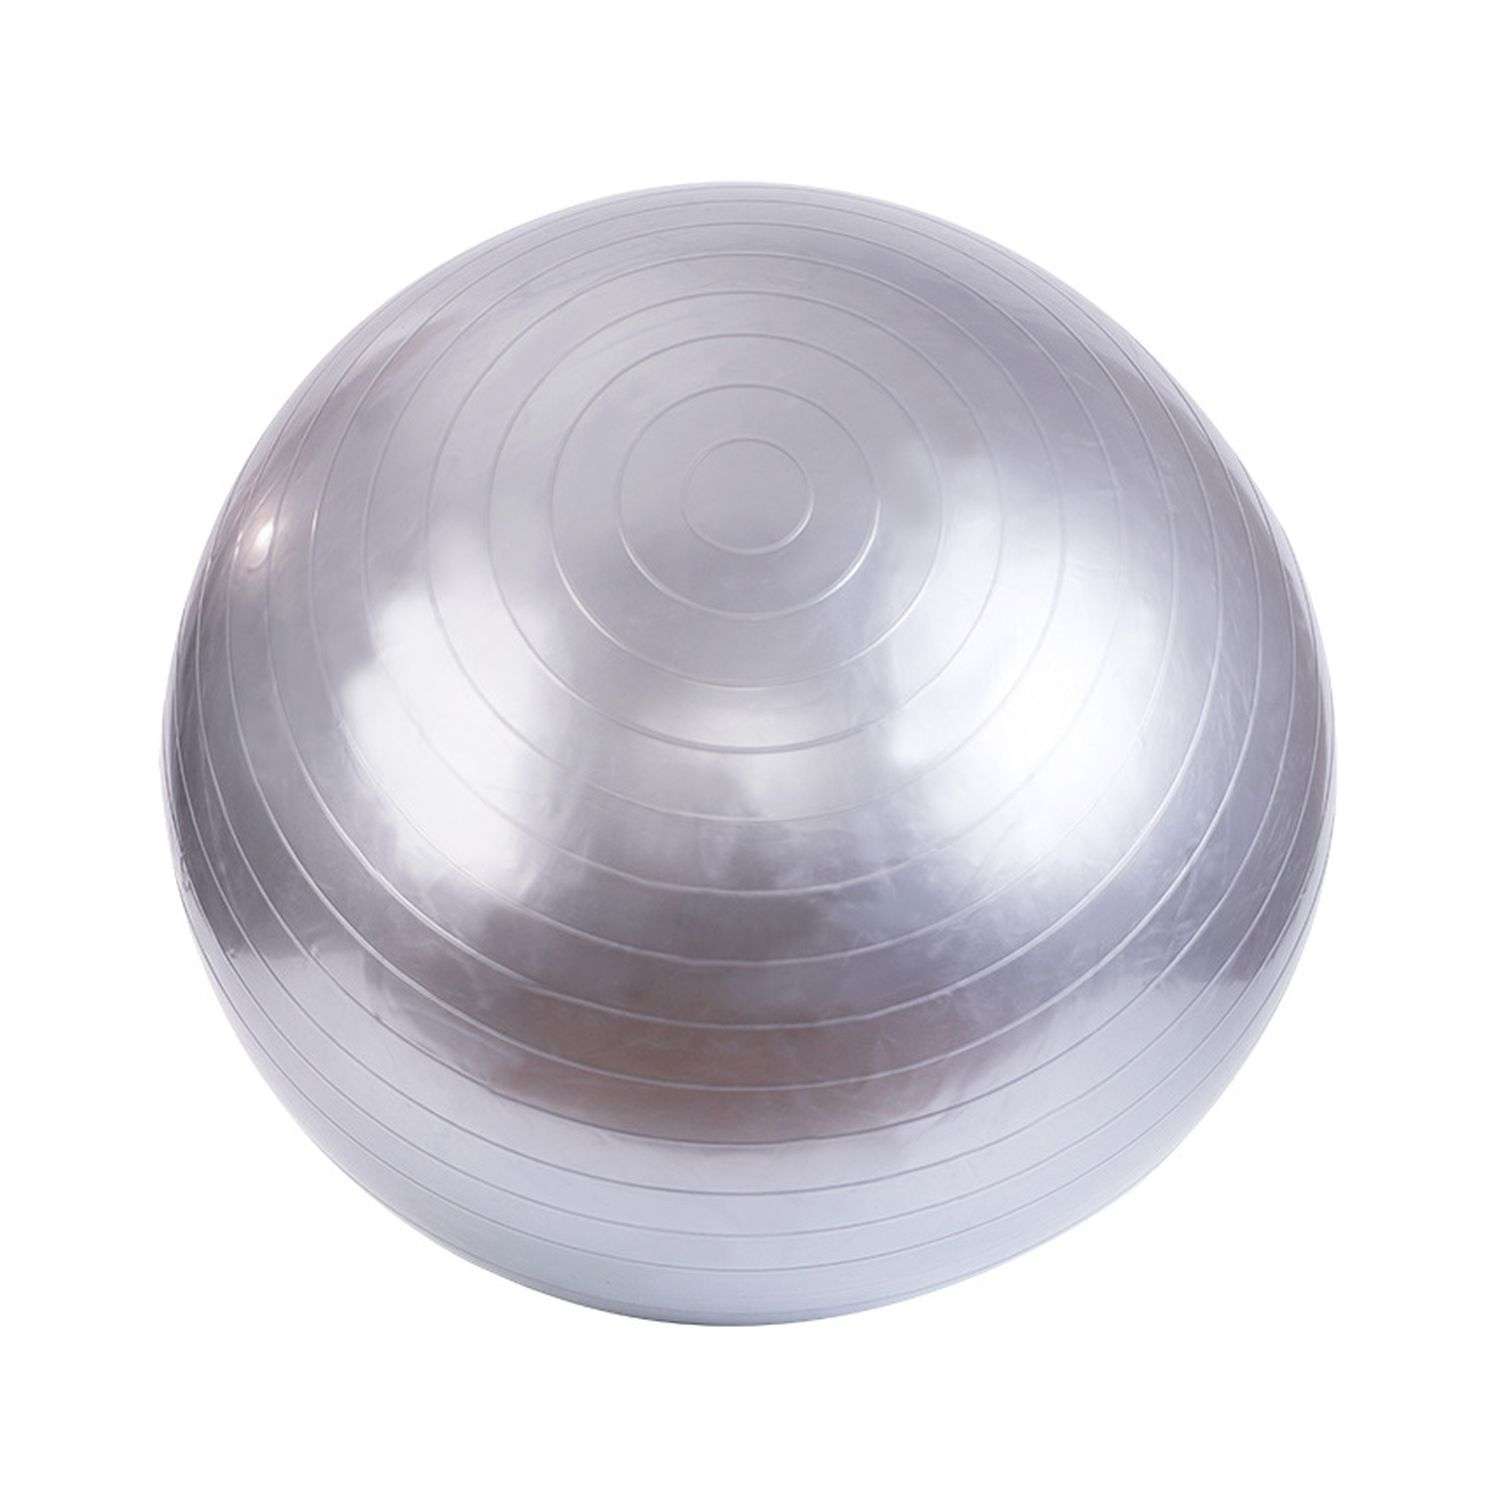 Фитбол Beroma с антивзрывным эффектом 65 см серый - фото 1